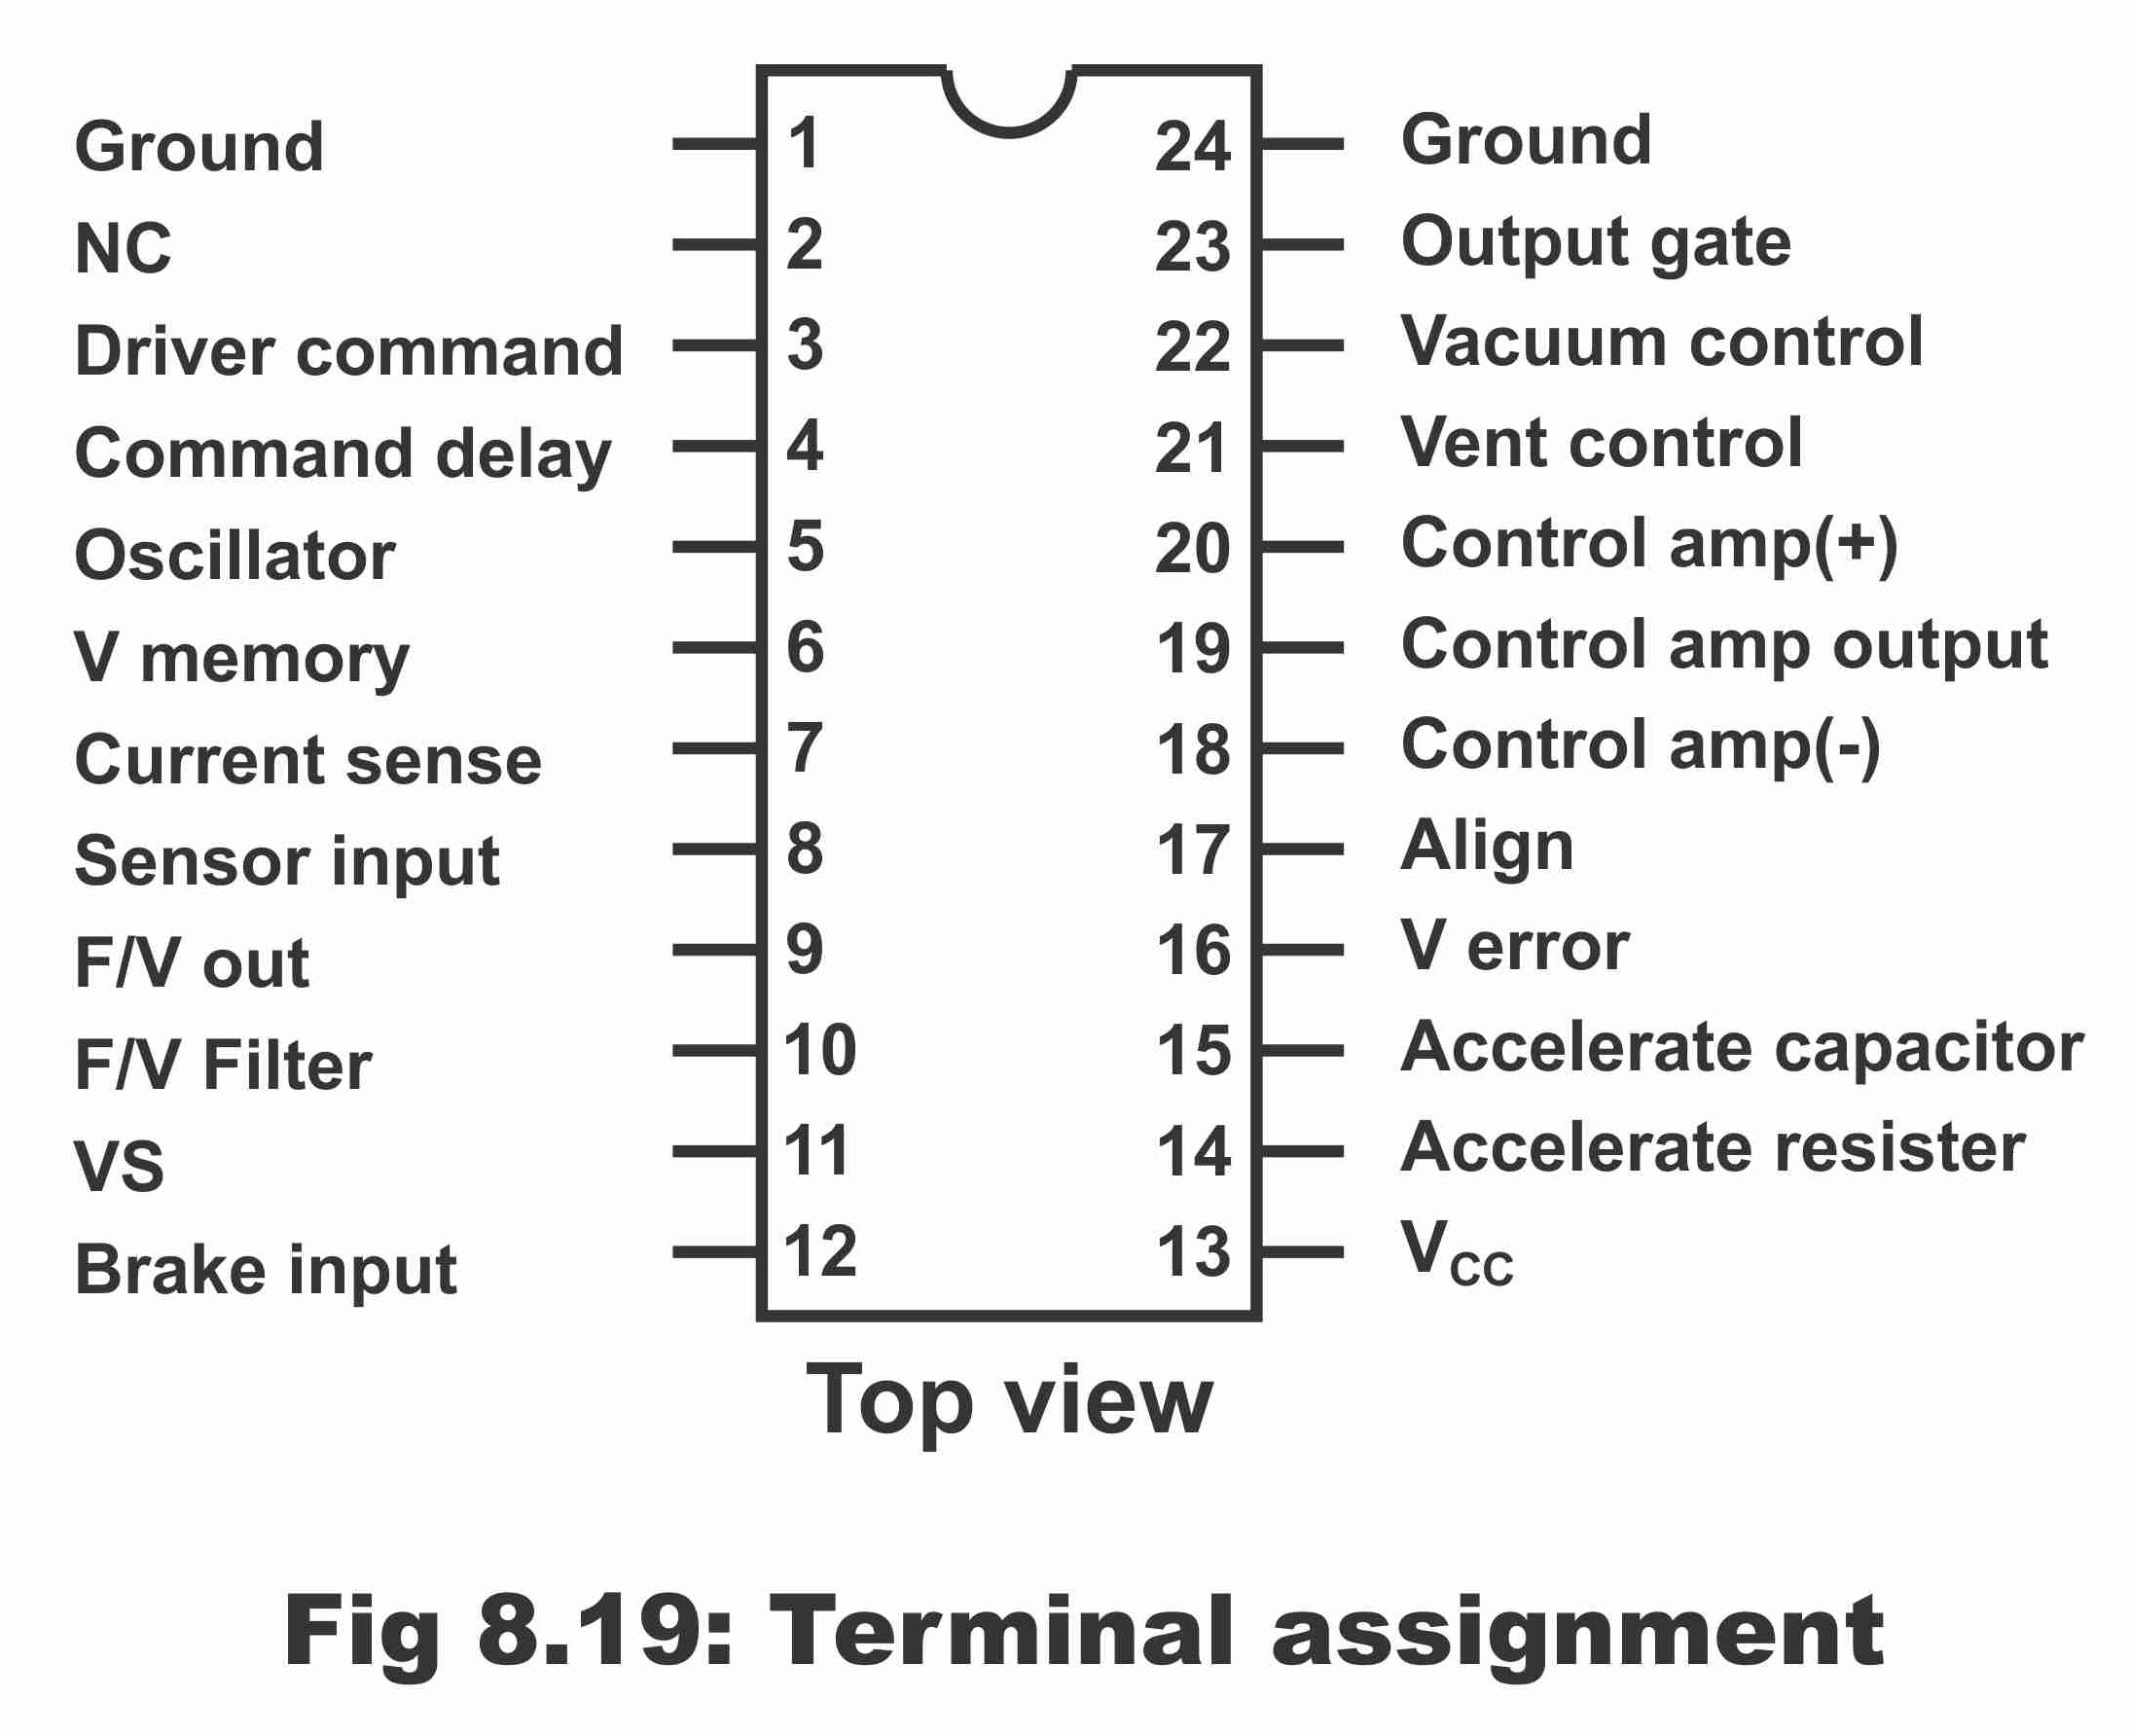 Classification of ICs